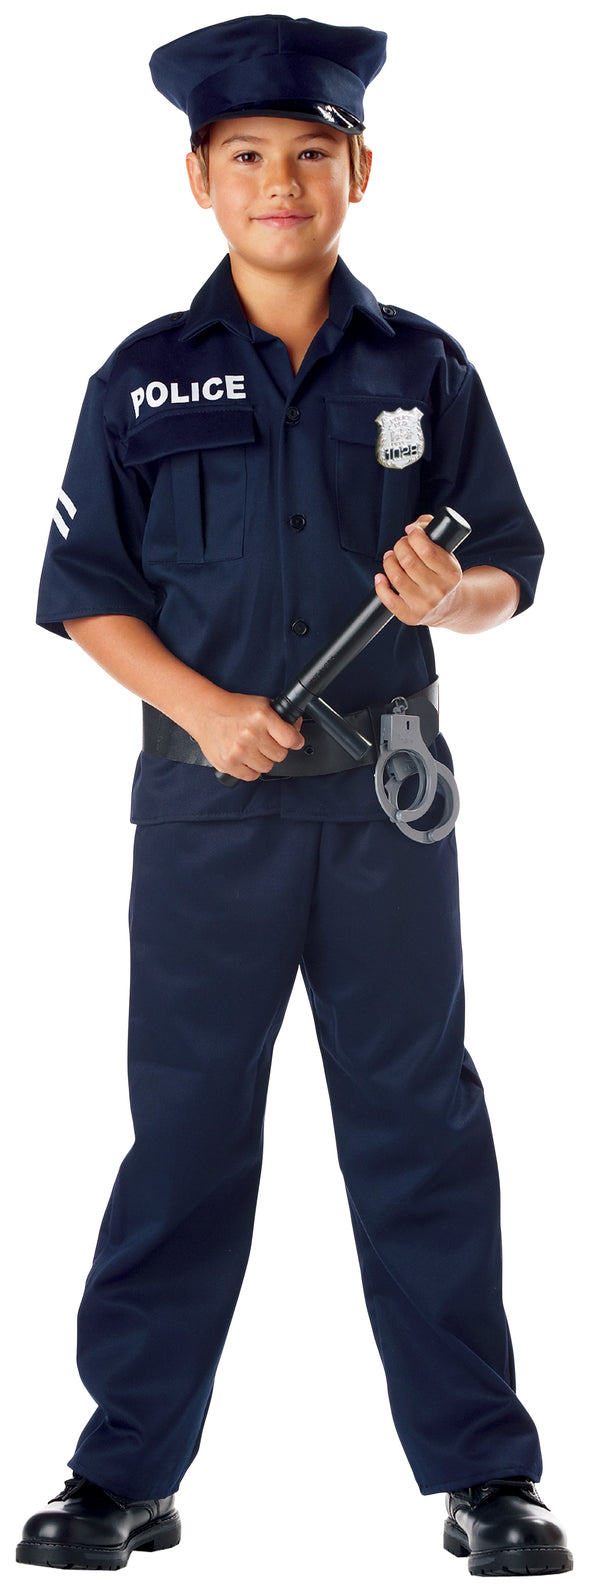 Police Costume (Child)